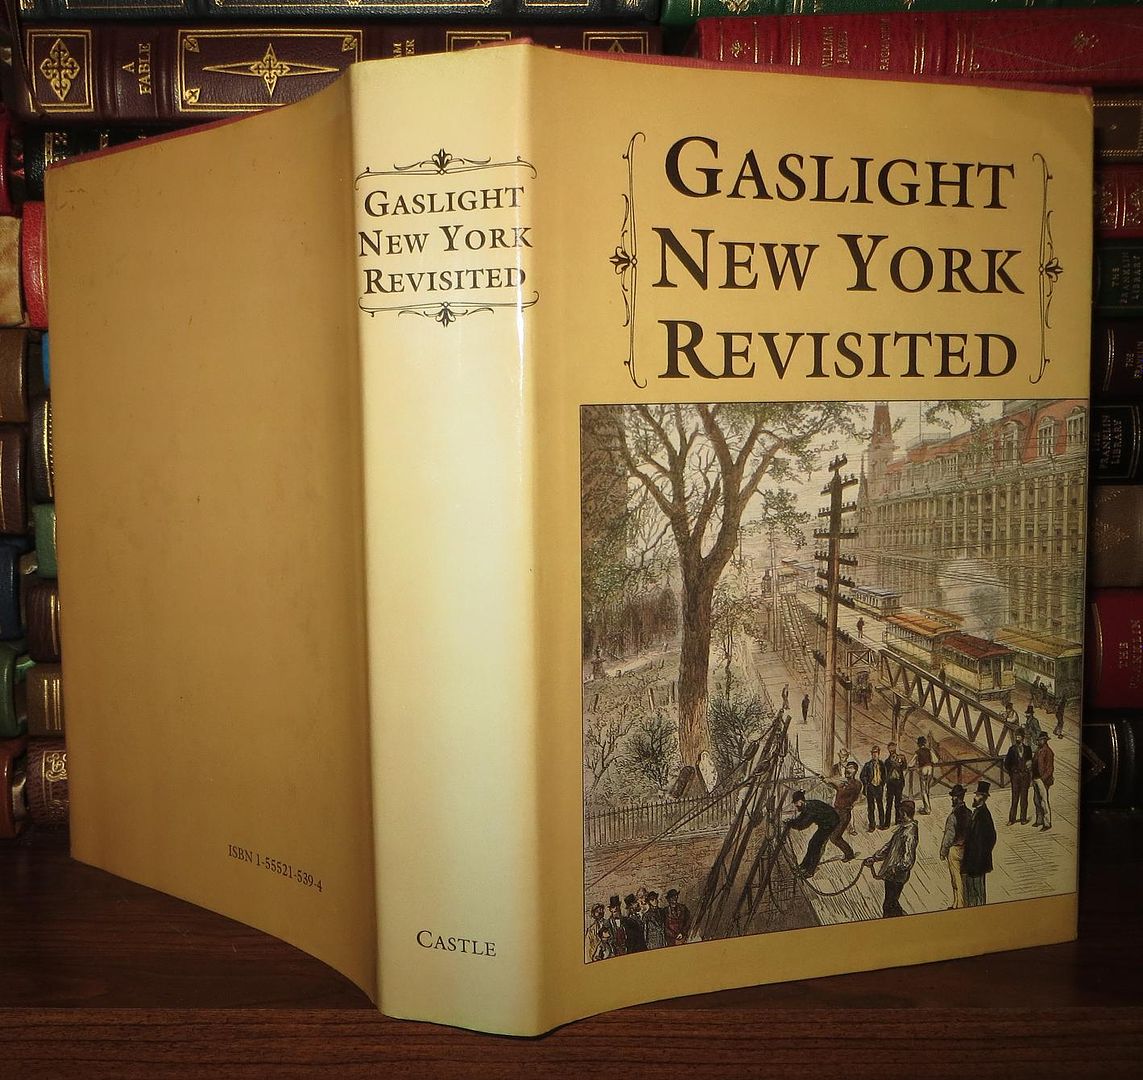 OPPEL, FRANK - Gaslight New York Revisited